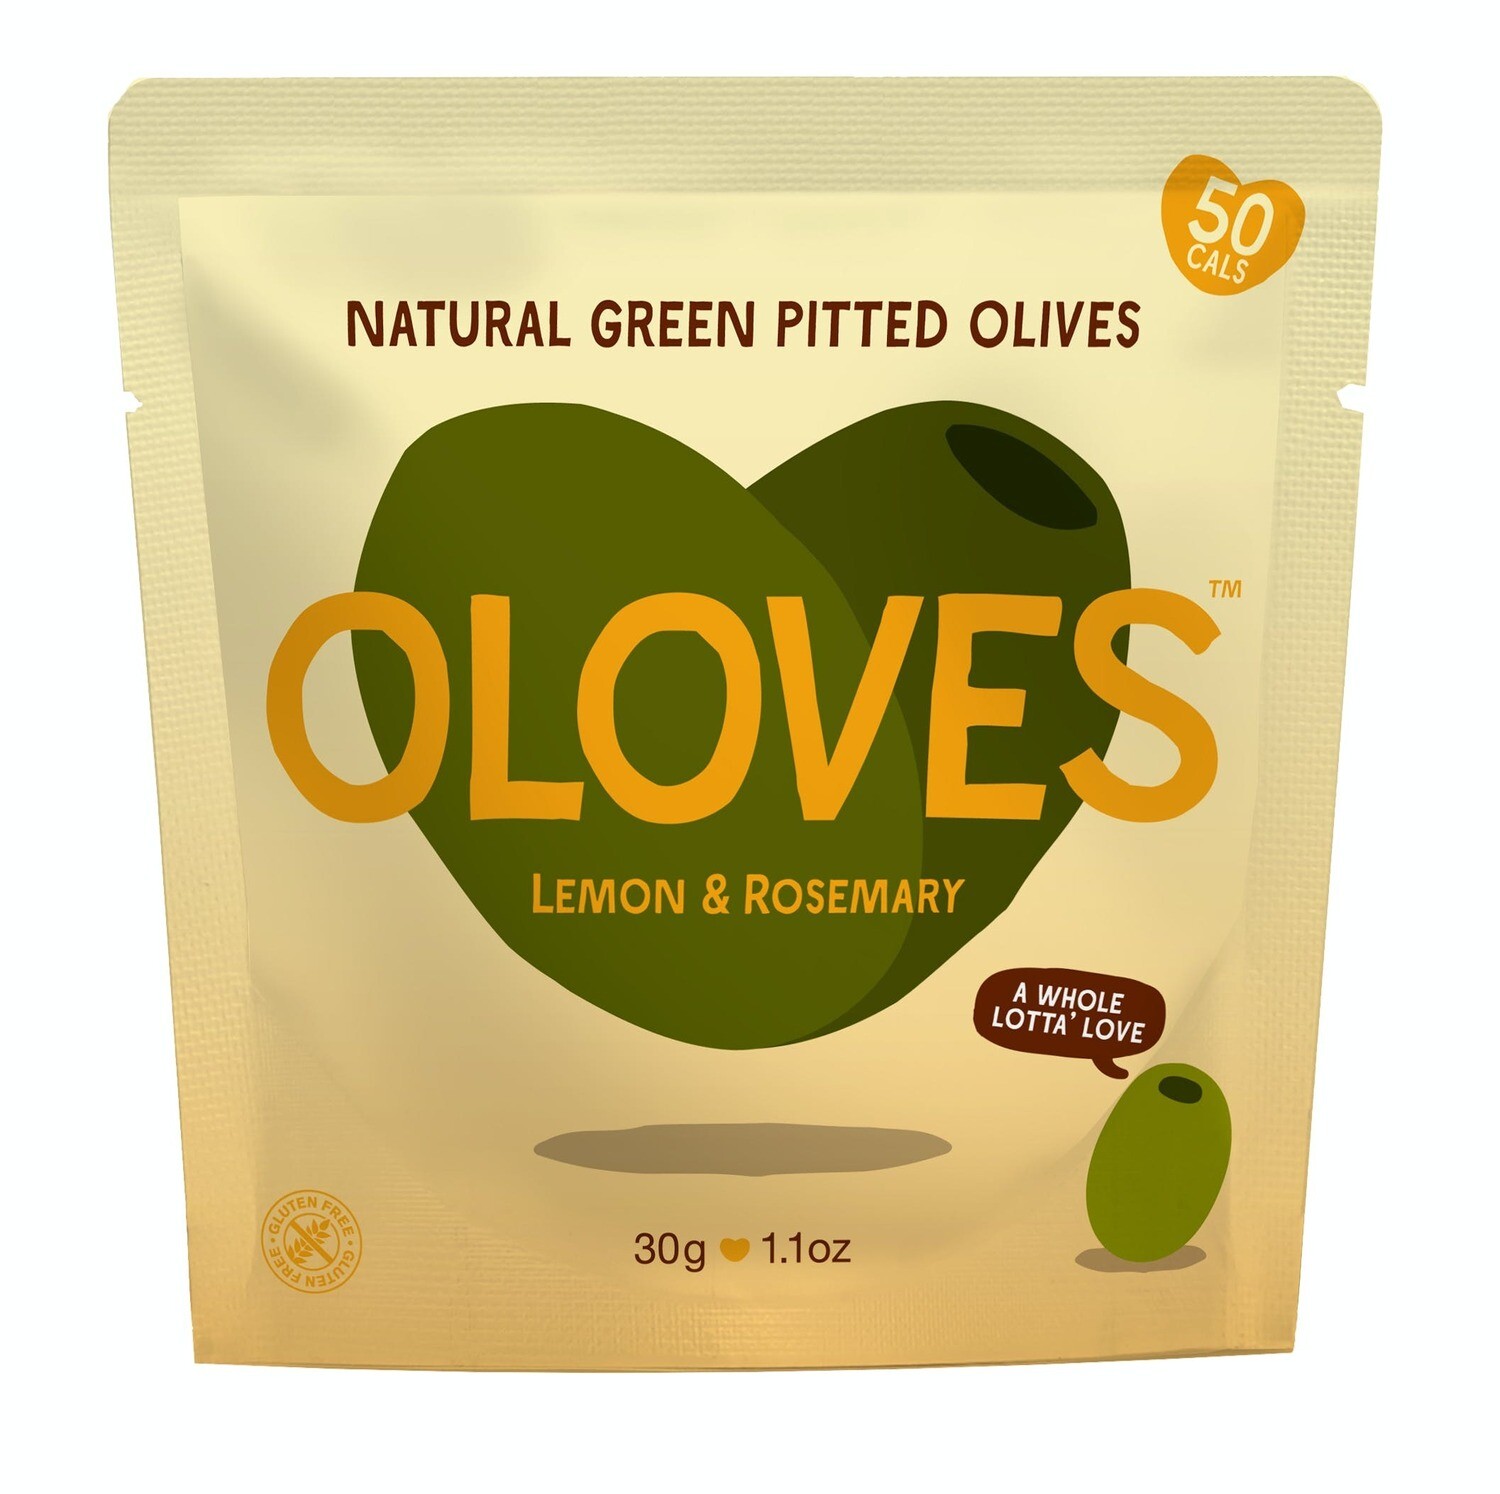 Oloves Lemony & Rosemary Pitted Green Olives